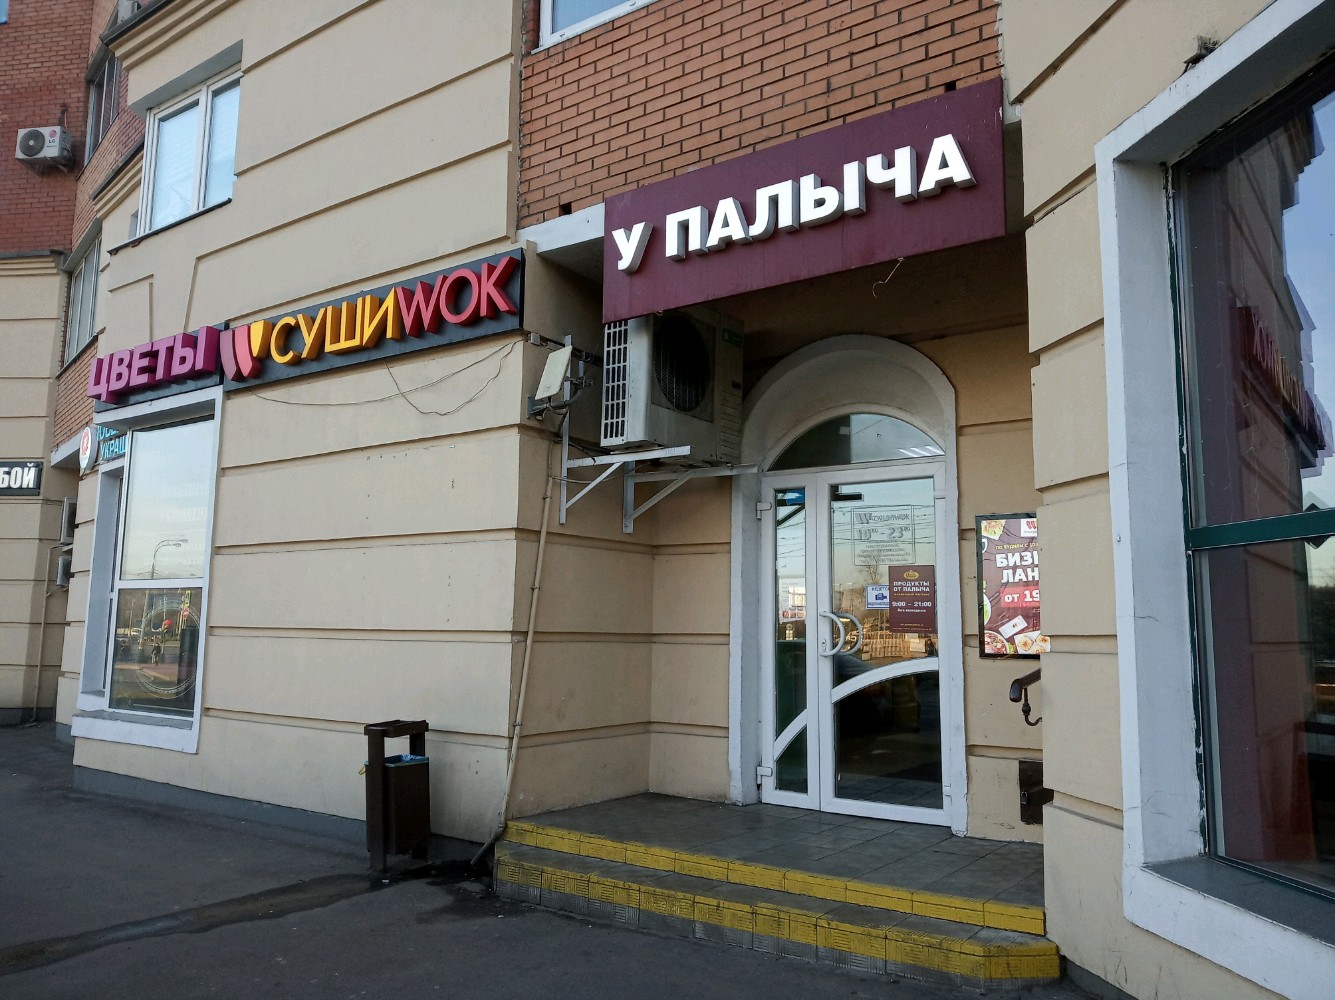 Суши вок москва бизнес ланч фото 114